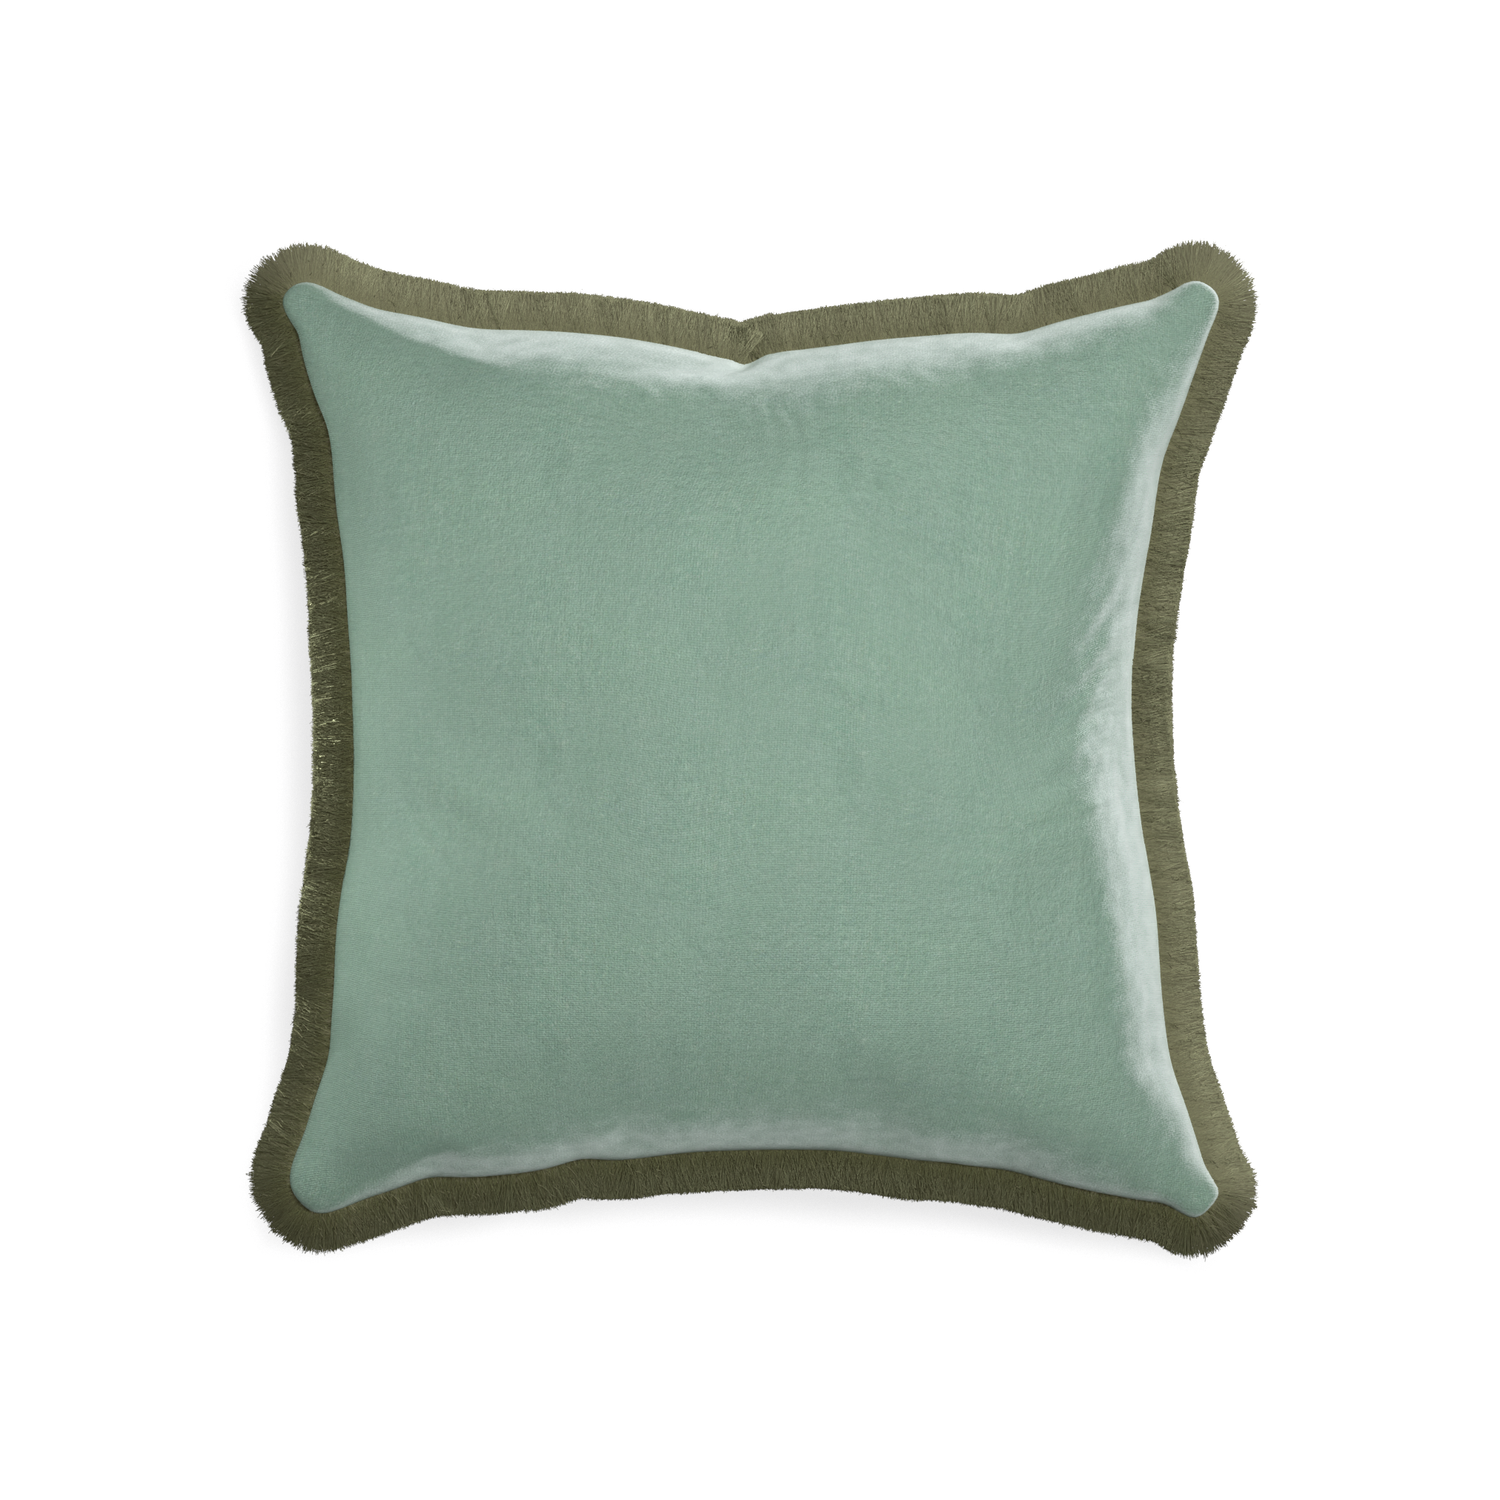 square blue green velvet pillow with sage green fringe